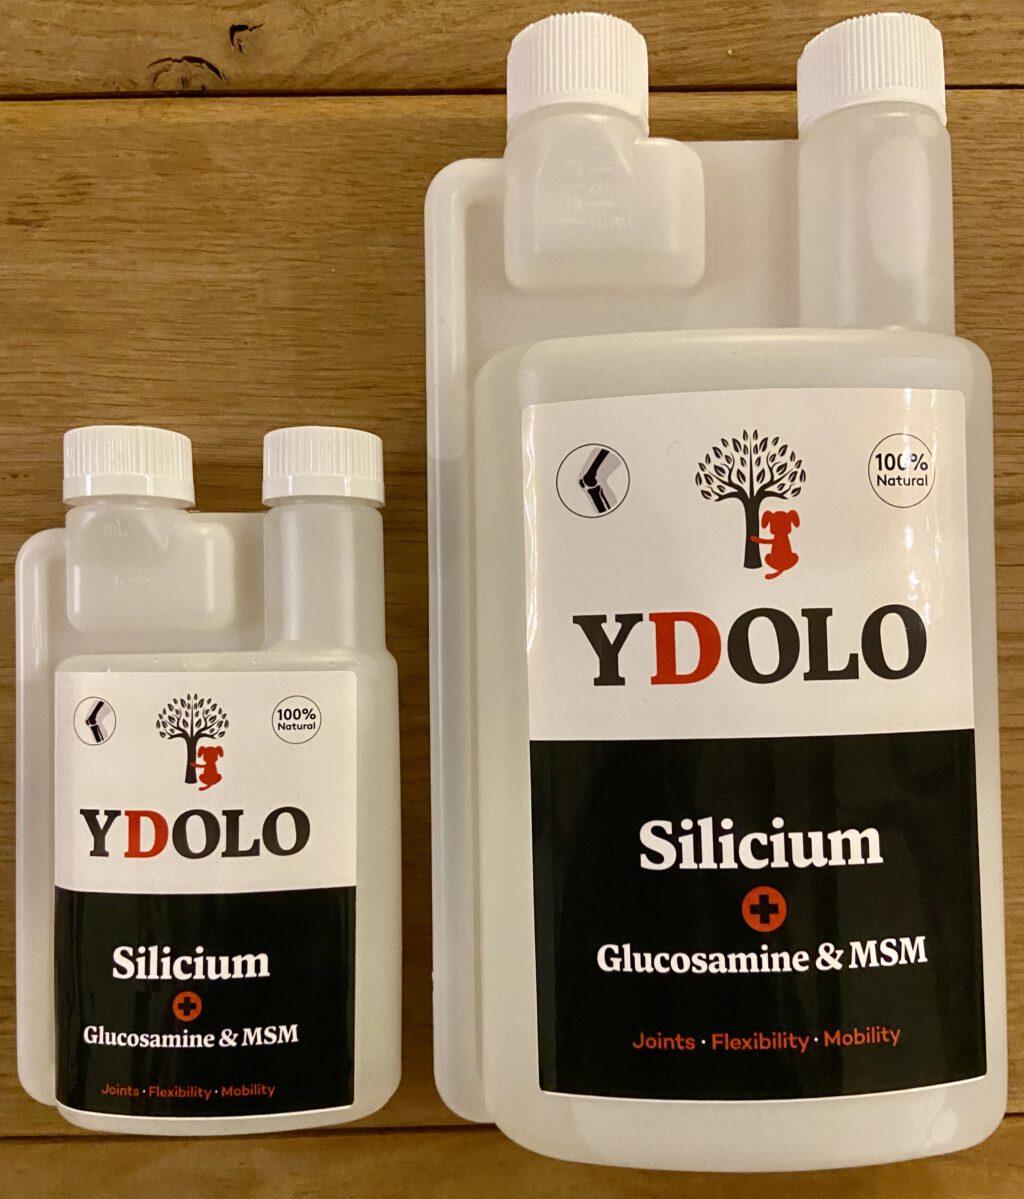 YDOLO – Flexibele gewrichten (SILICIUM + Glucosamine & MSM)